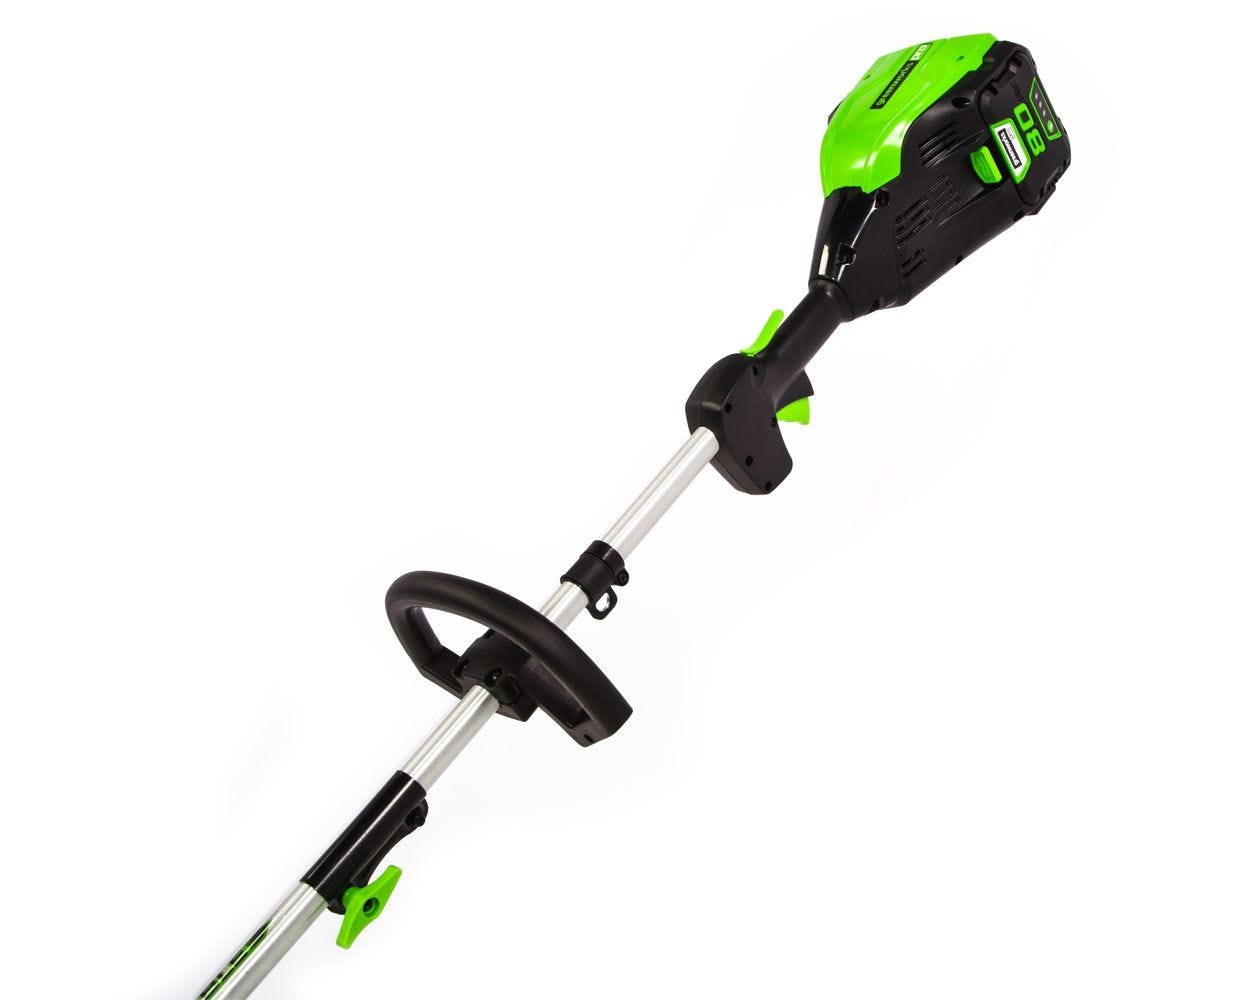 Greenworks 80V 16” Brushless Attachment Capable String Trimmer